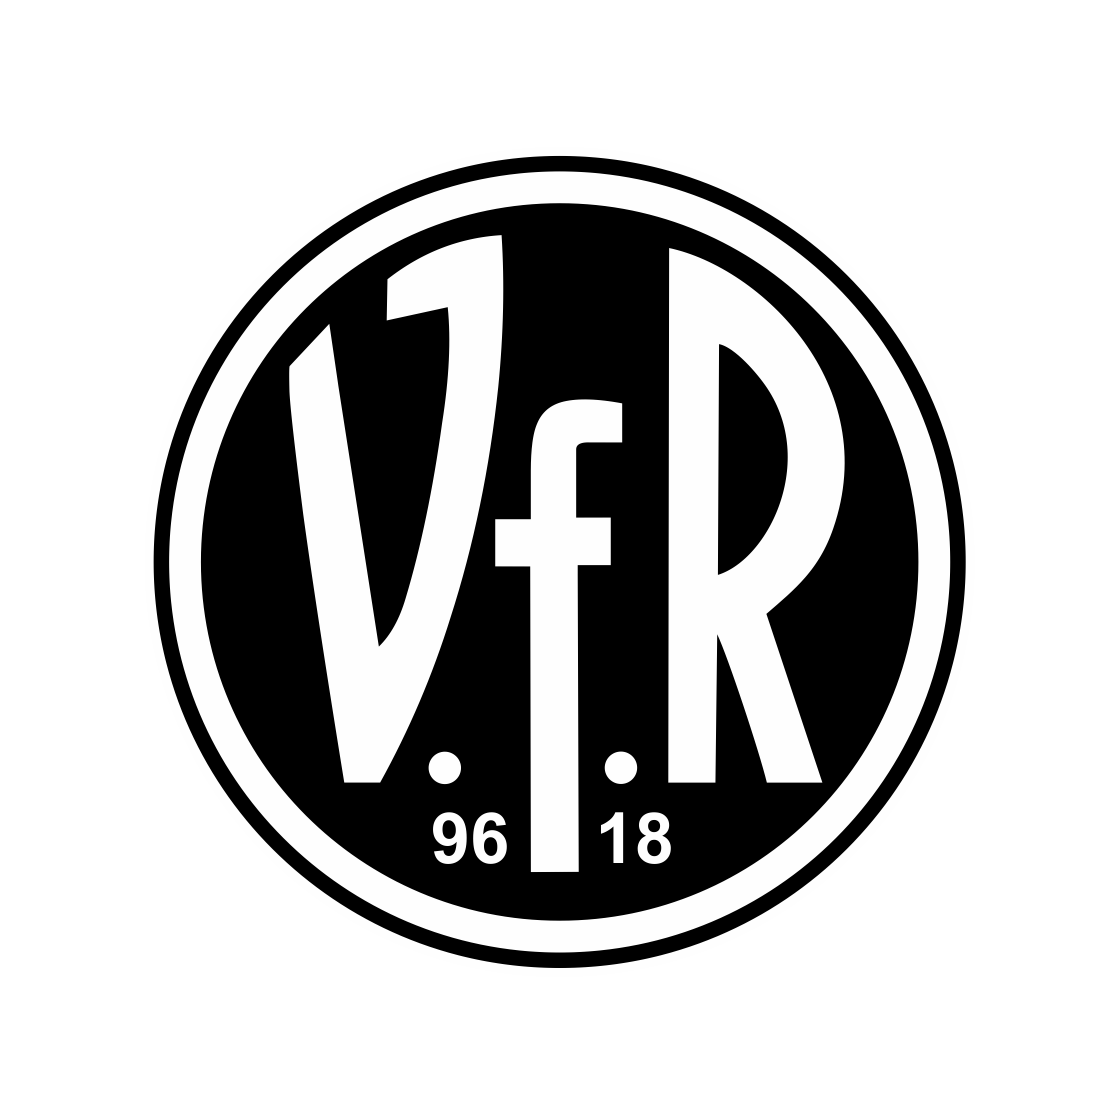 VfR Heilbronn 98-18 e.V.